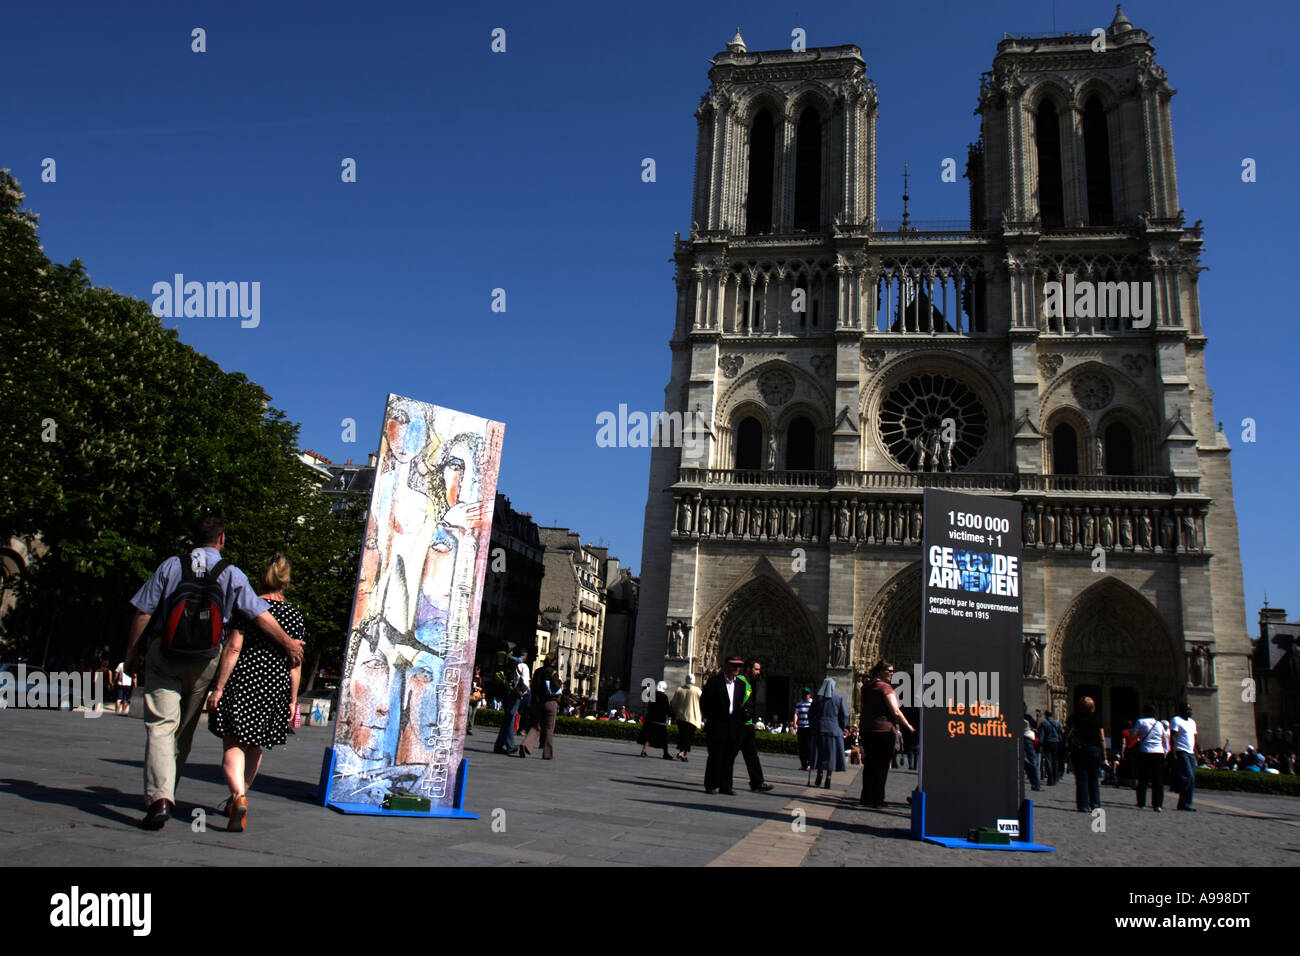 Sur Le Parvis de Notre Dame de Paris, D'onu génocide à l'autre : 1915 rete pour le Darfour Foto Stock